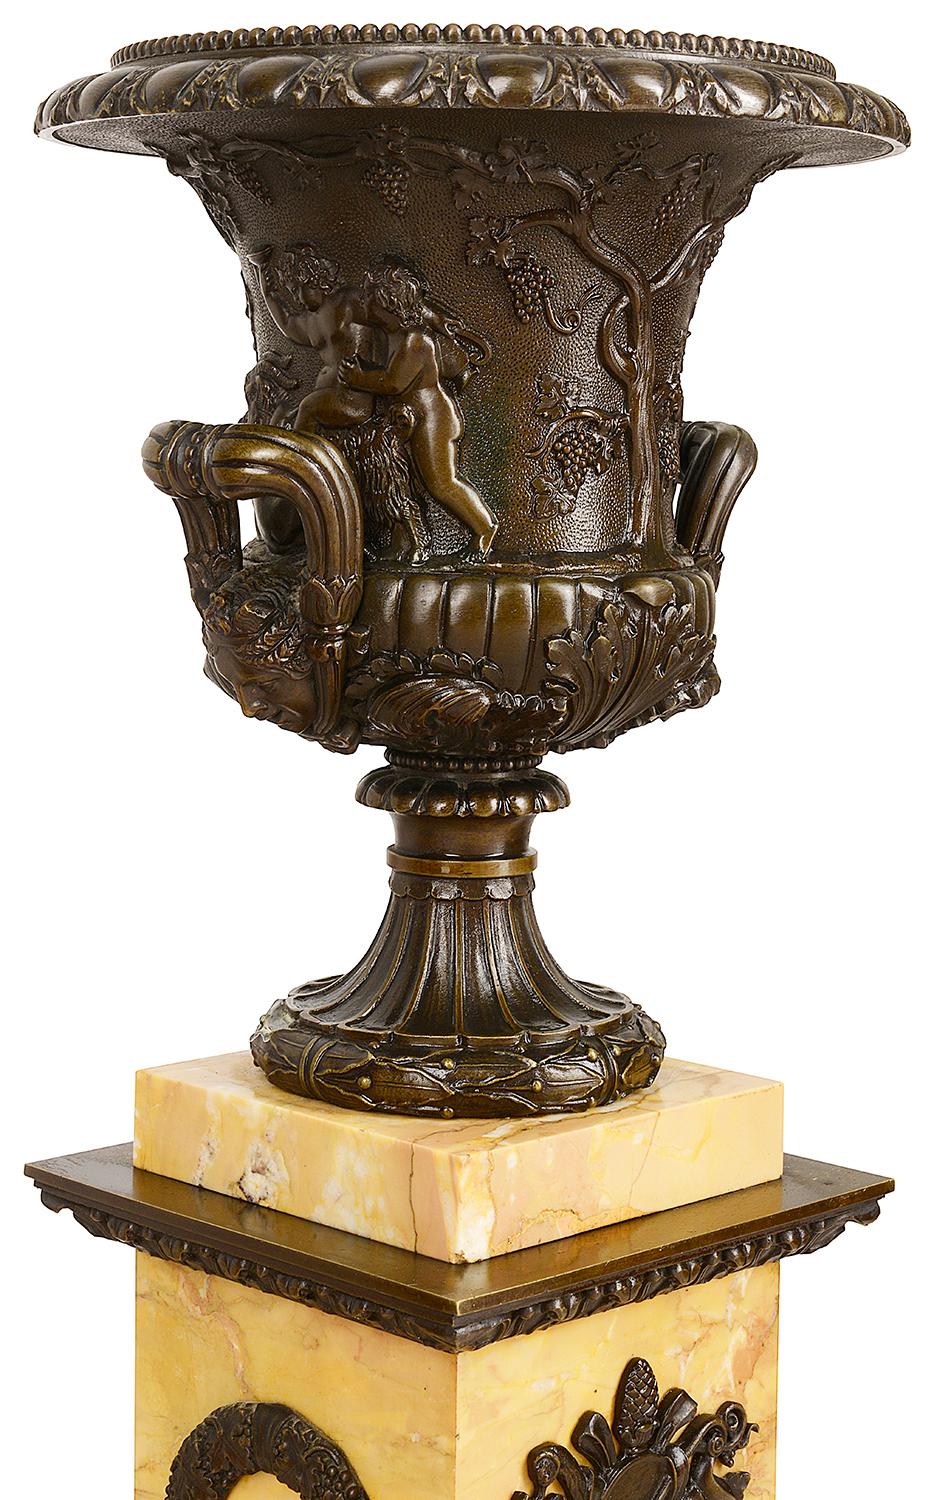 Paire de remarquables urnes néoclassiques en bronze patiné de forme Capana du XIXe siècle, montées sur des socles en marbre de Sienne. Chacune d'elles est ornée de putti jouant parmi des vignes, de deux anses à volutes, d'un moule en forme d'œuf et